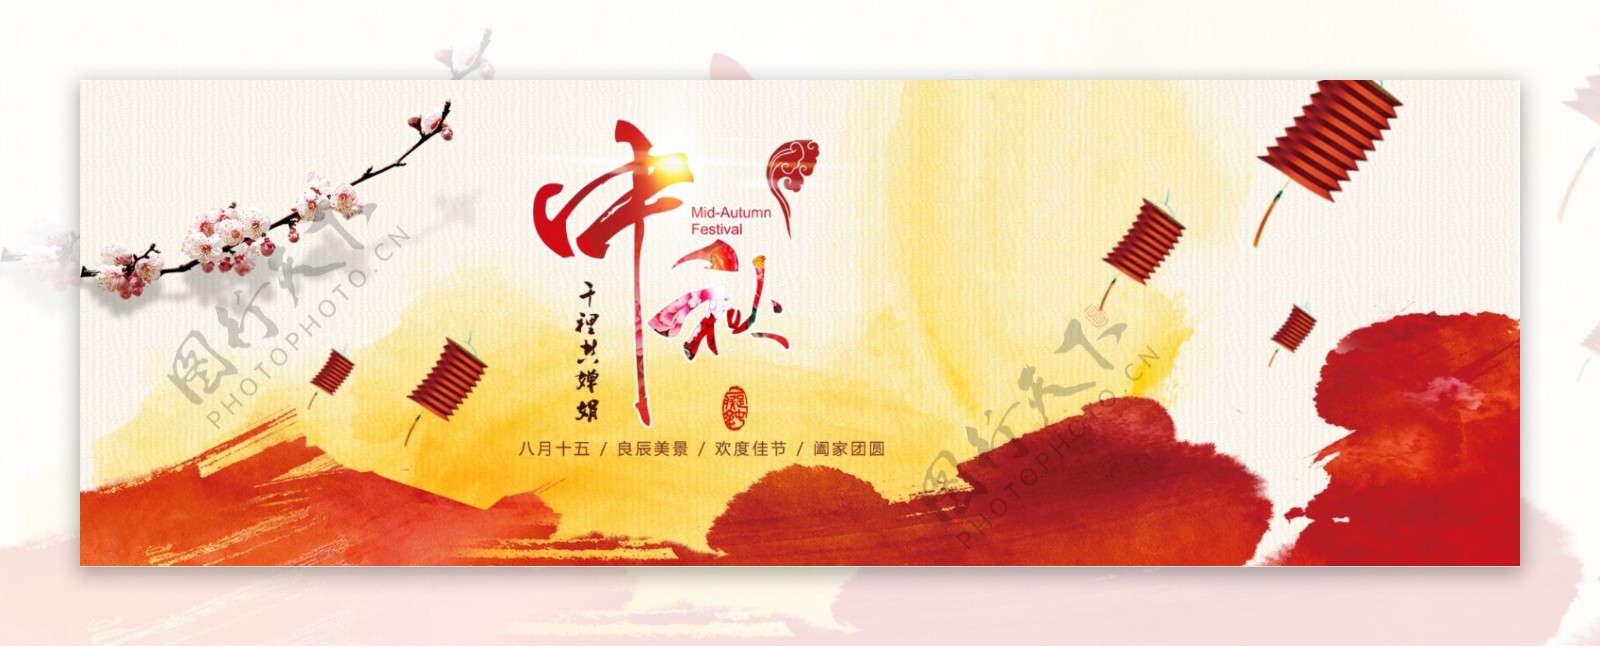 电商淘宝天猫中秋节活动促销海报banner模板设计